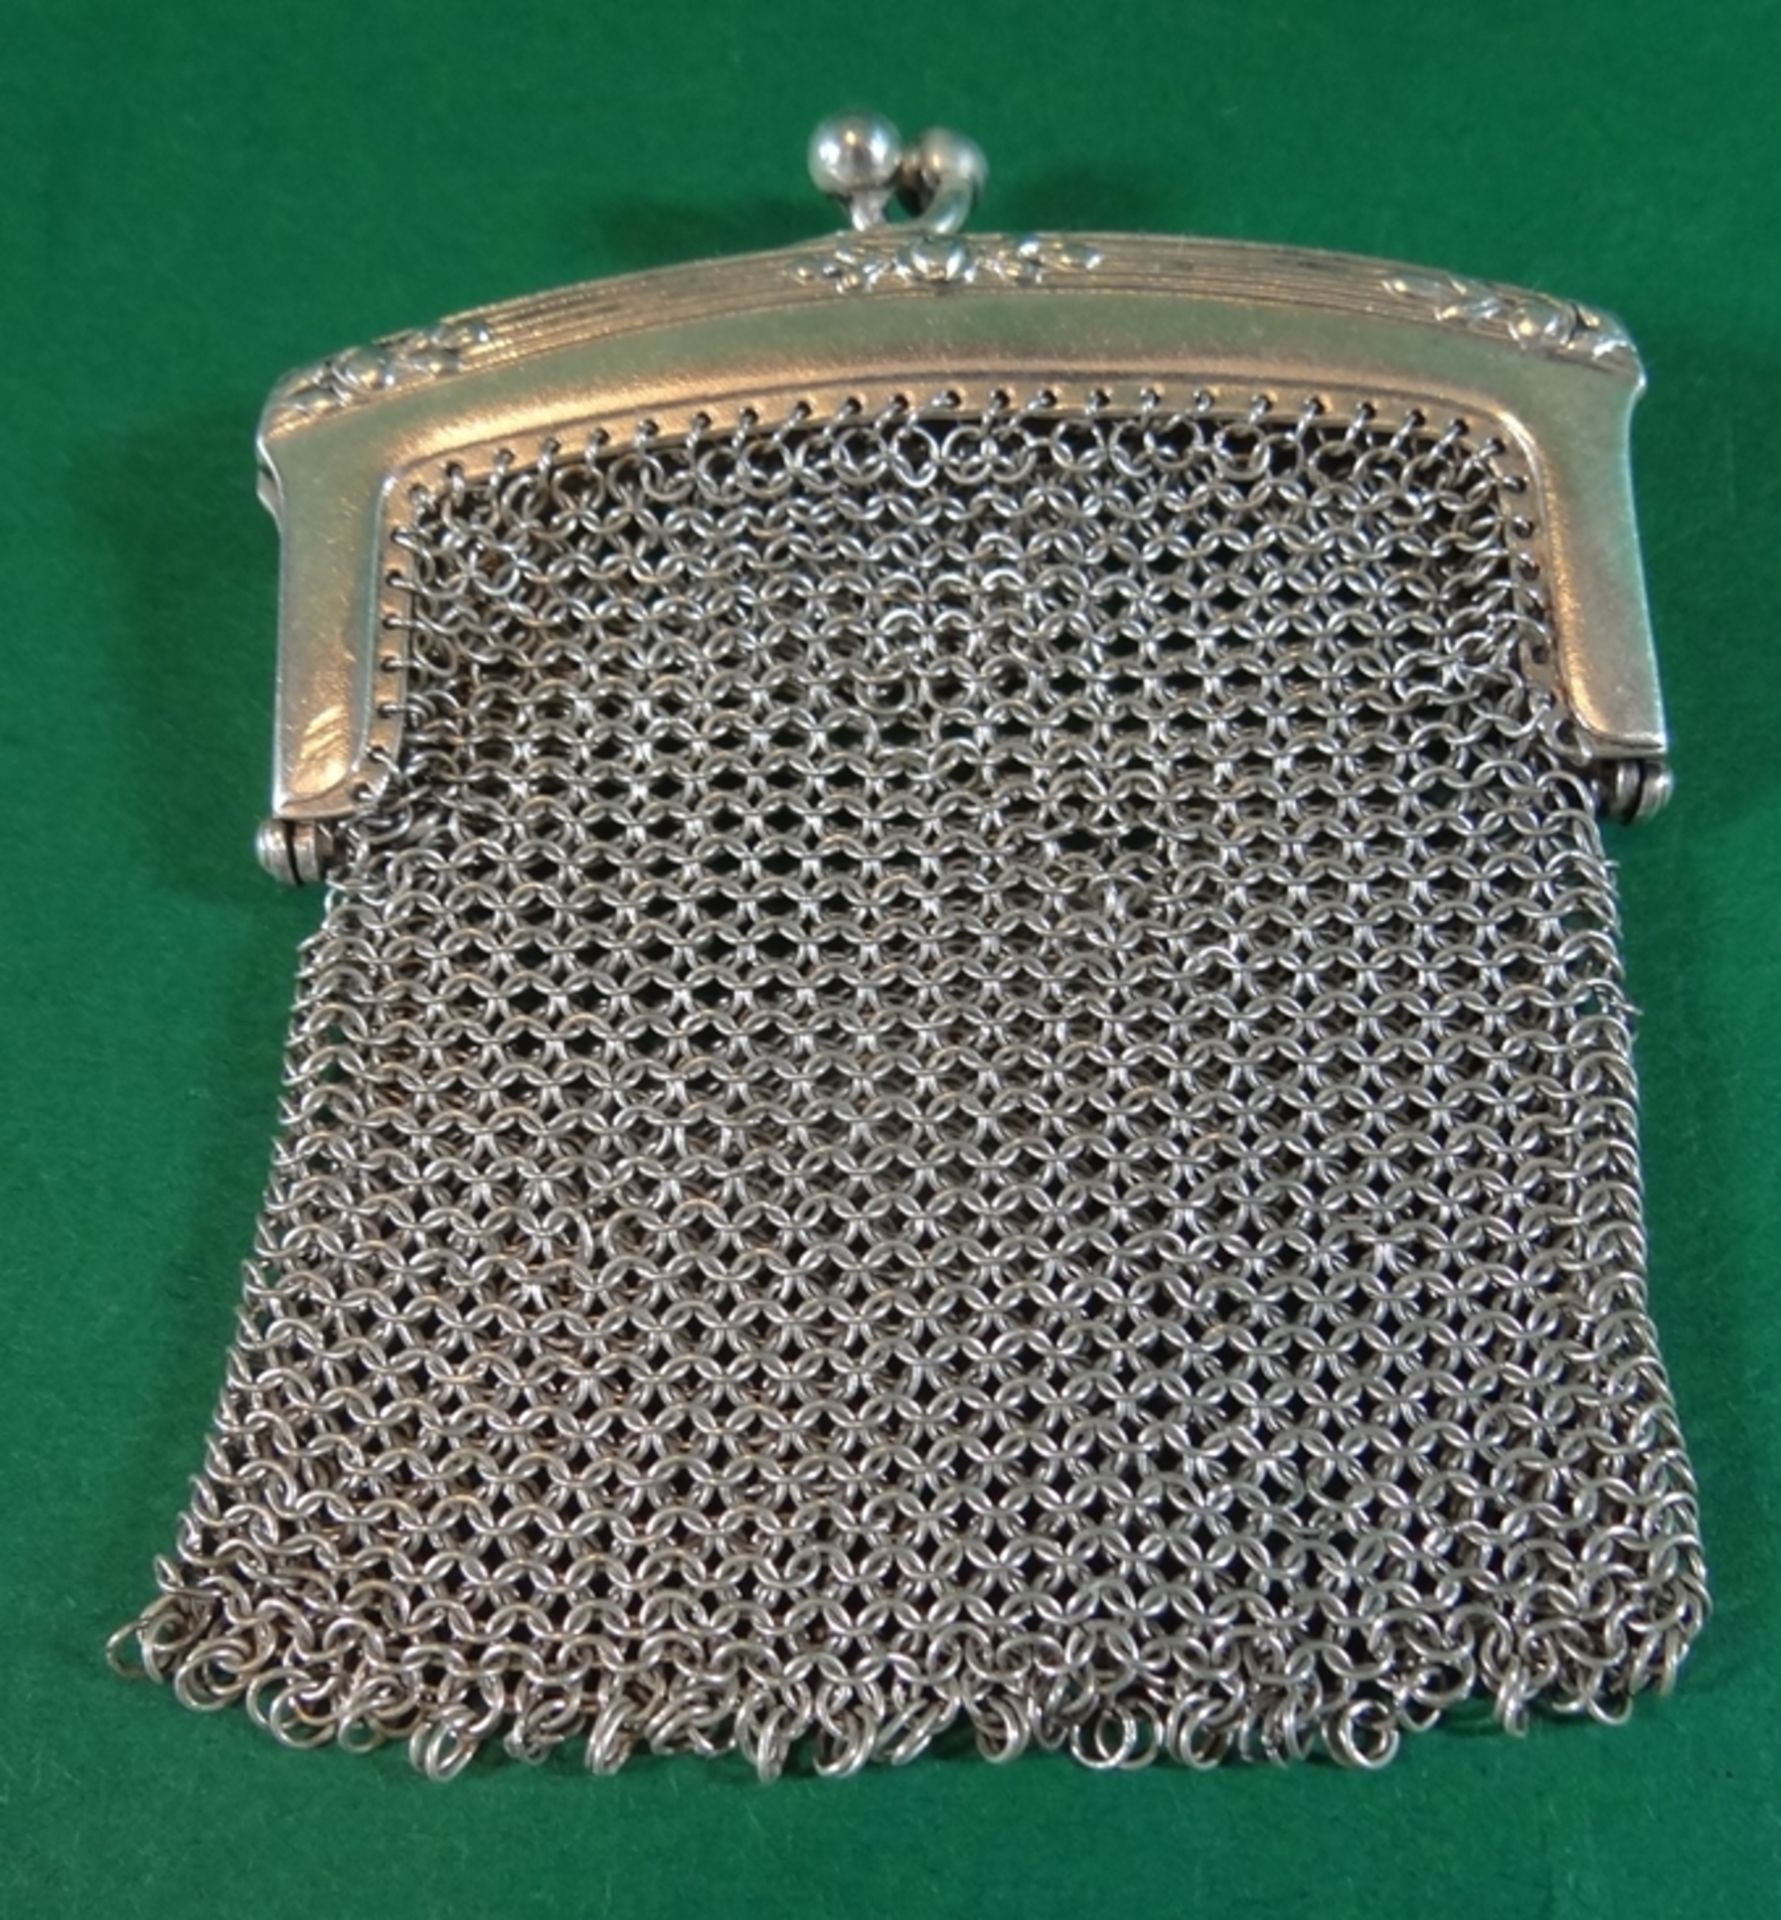 Kleingeld-Beutel aus Silberdraht, leicht beschädigt, Silber geprüft, 7x6 cm, 31 gr.